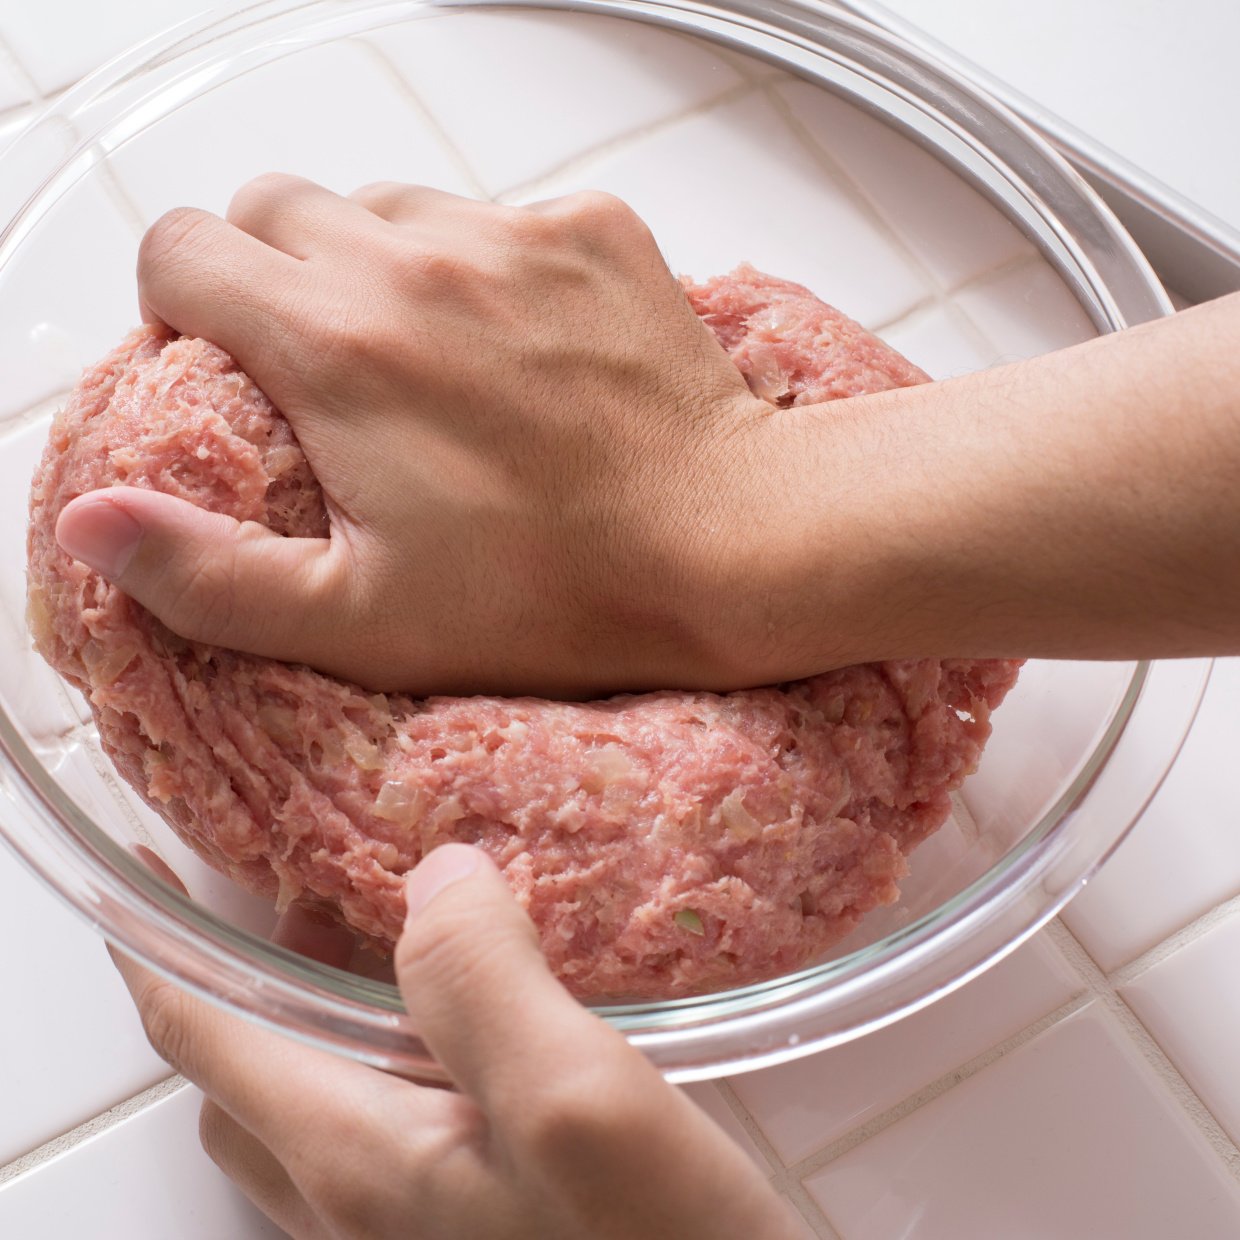  ひき肉をこねたベトベトの手が最短でキレイになる方法 